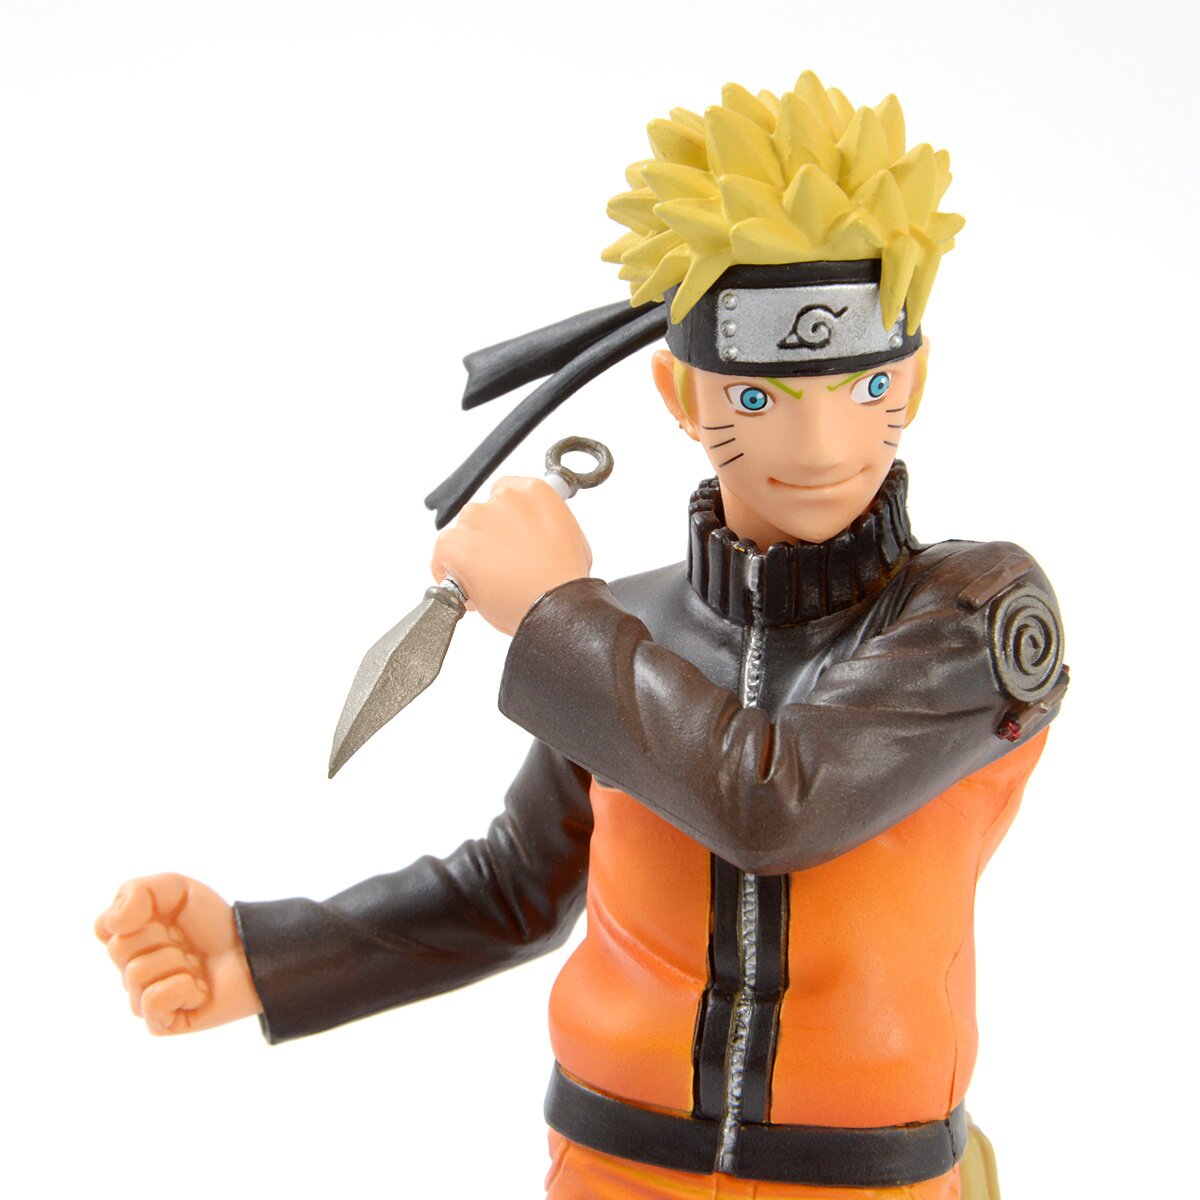 Figurine Boruto Naruto Next Generation Naruto 16cm